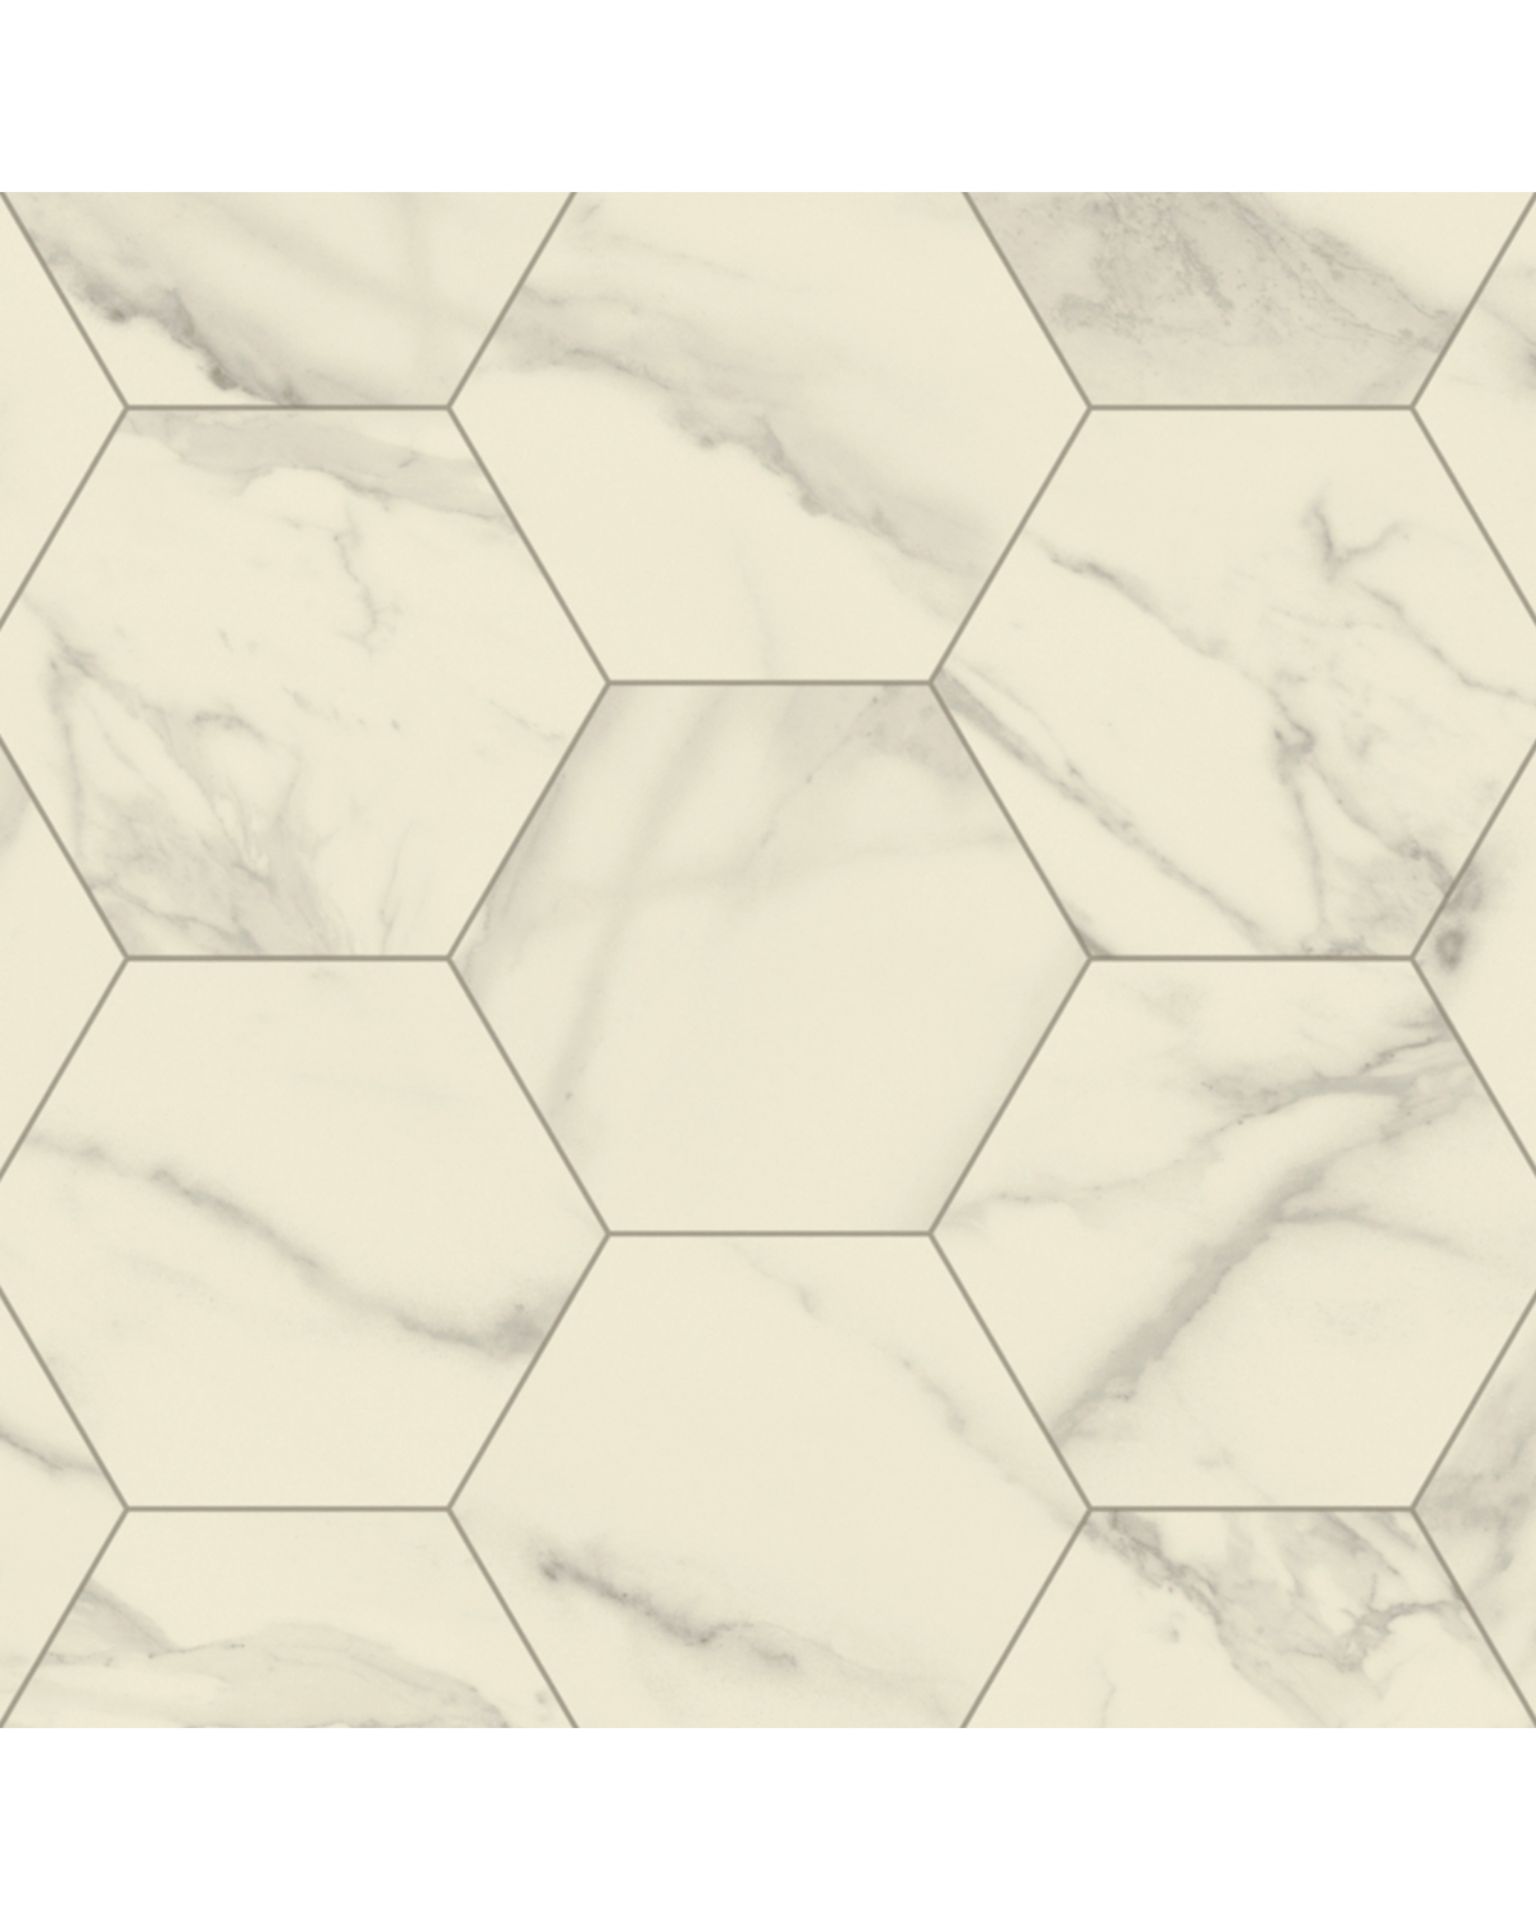 Bilde av Aquarelle Gulv 3M Marble Bianco Hexagon White